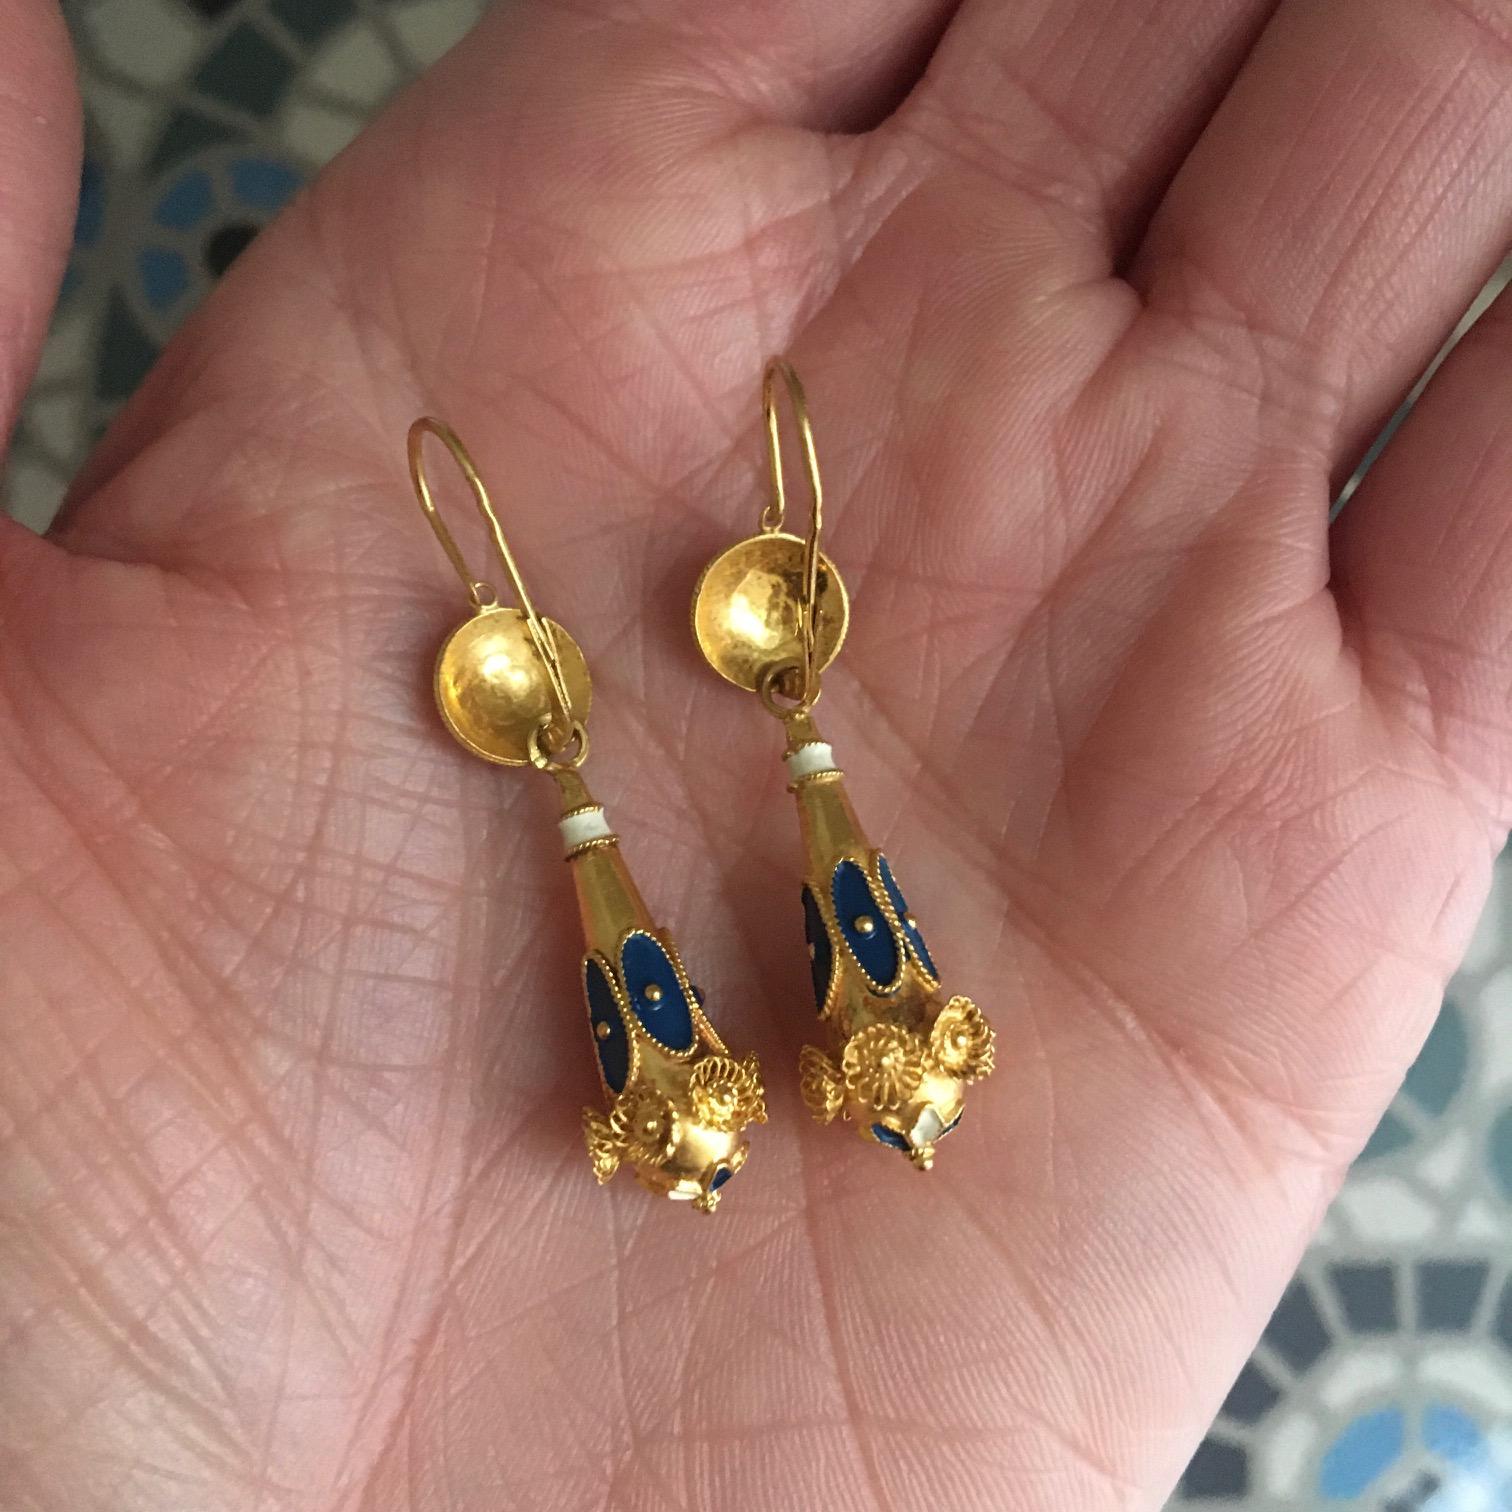 2.5 gram gold earrings